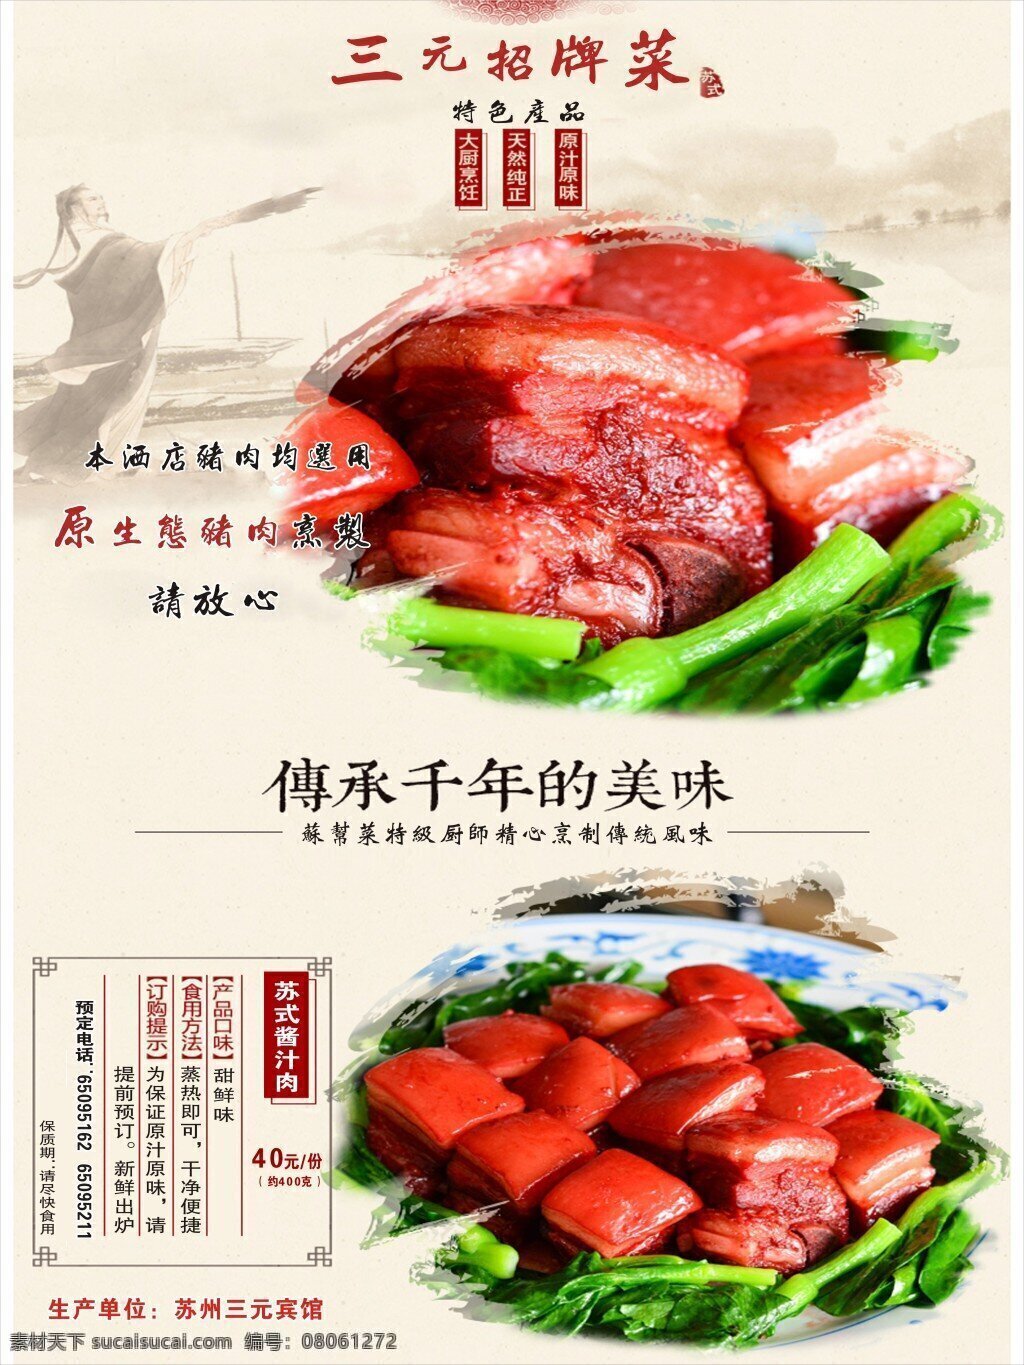 苏式 酱汁肉 招牌菜 海报 苏帮菜 猪肉 广告设计模板 传承美味 背景模板 矢量 白色